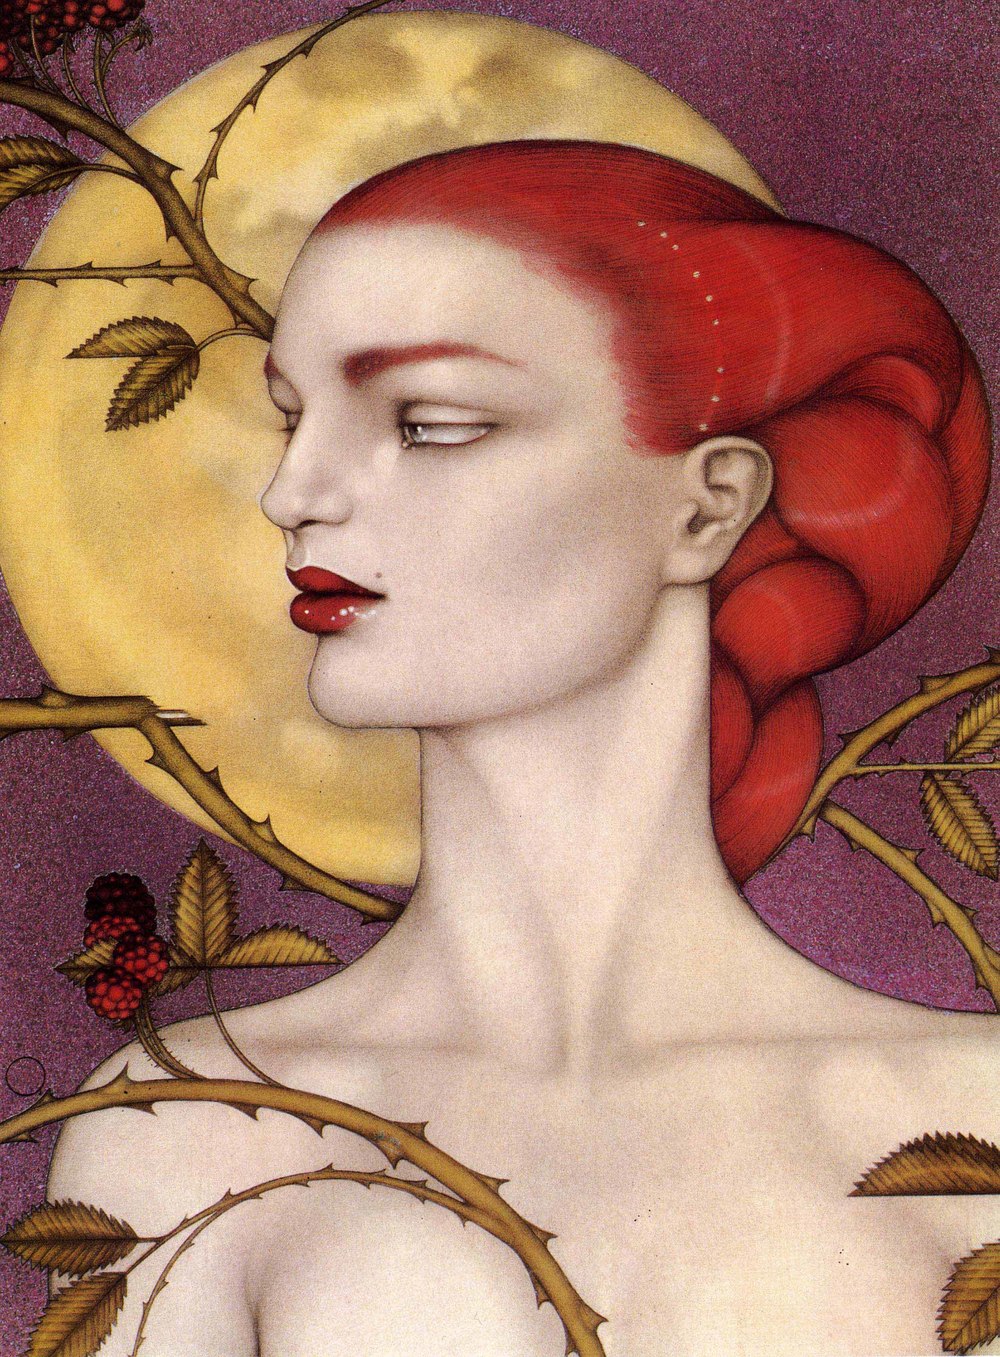 "Red Princess" by Mel Odom